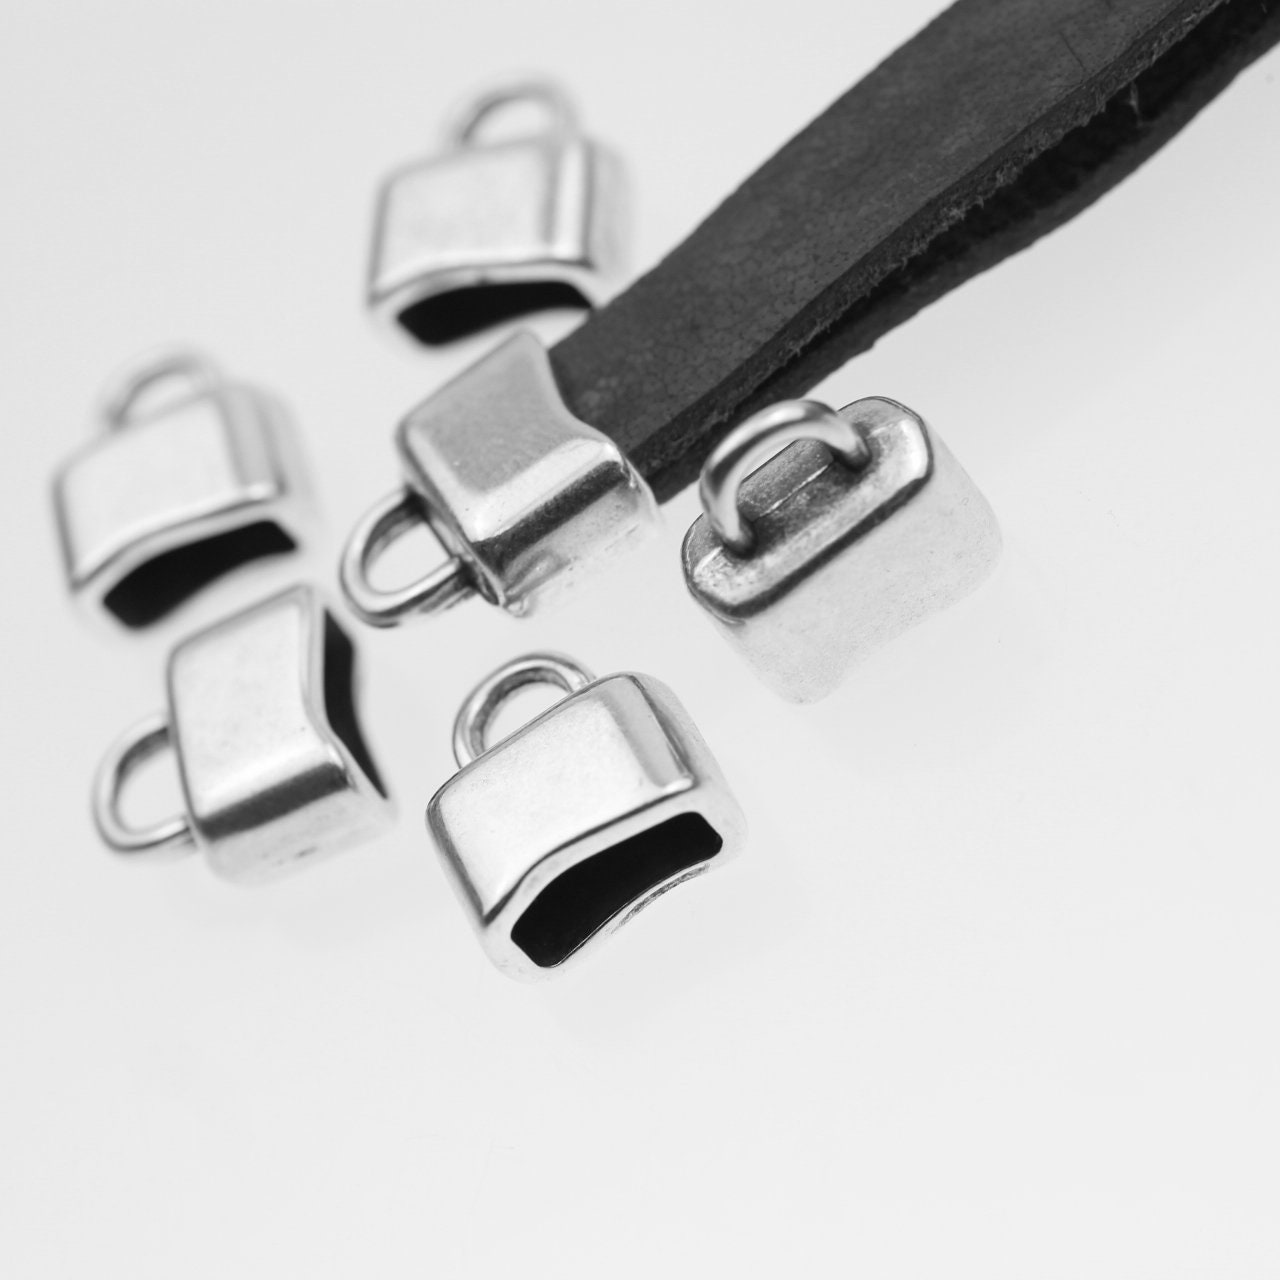 5 Bracelet Clasps, Black Clasp, Bracelet Clasps, for Leather Bracelets,  Cord Bracelets, Jewelry Clasps for Bracelets, Wholesale, Zm695 Mb 